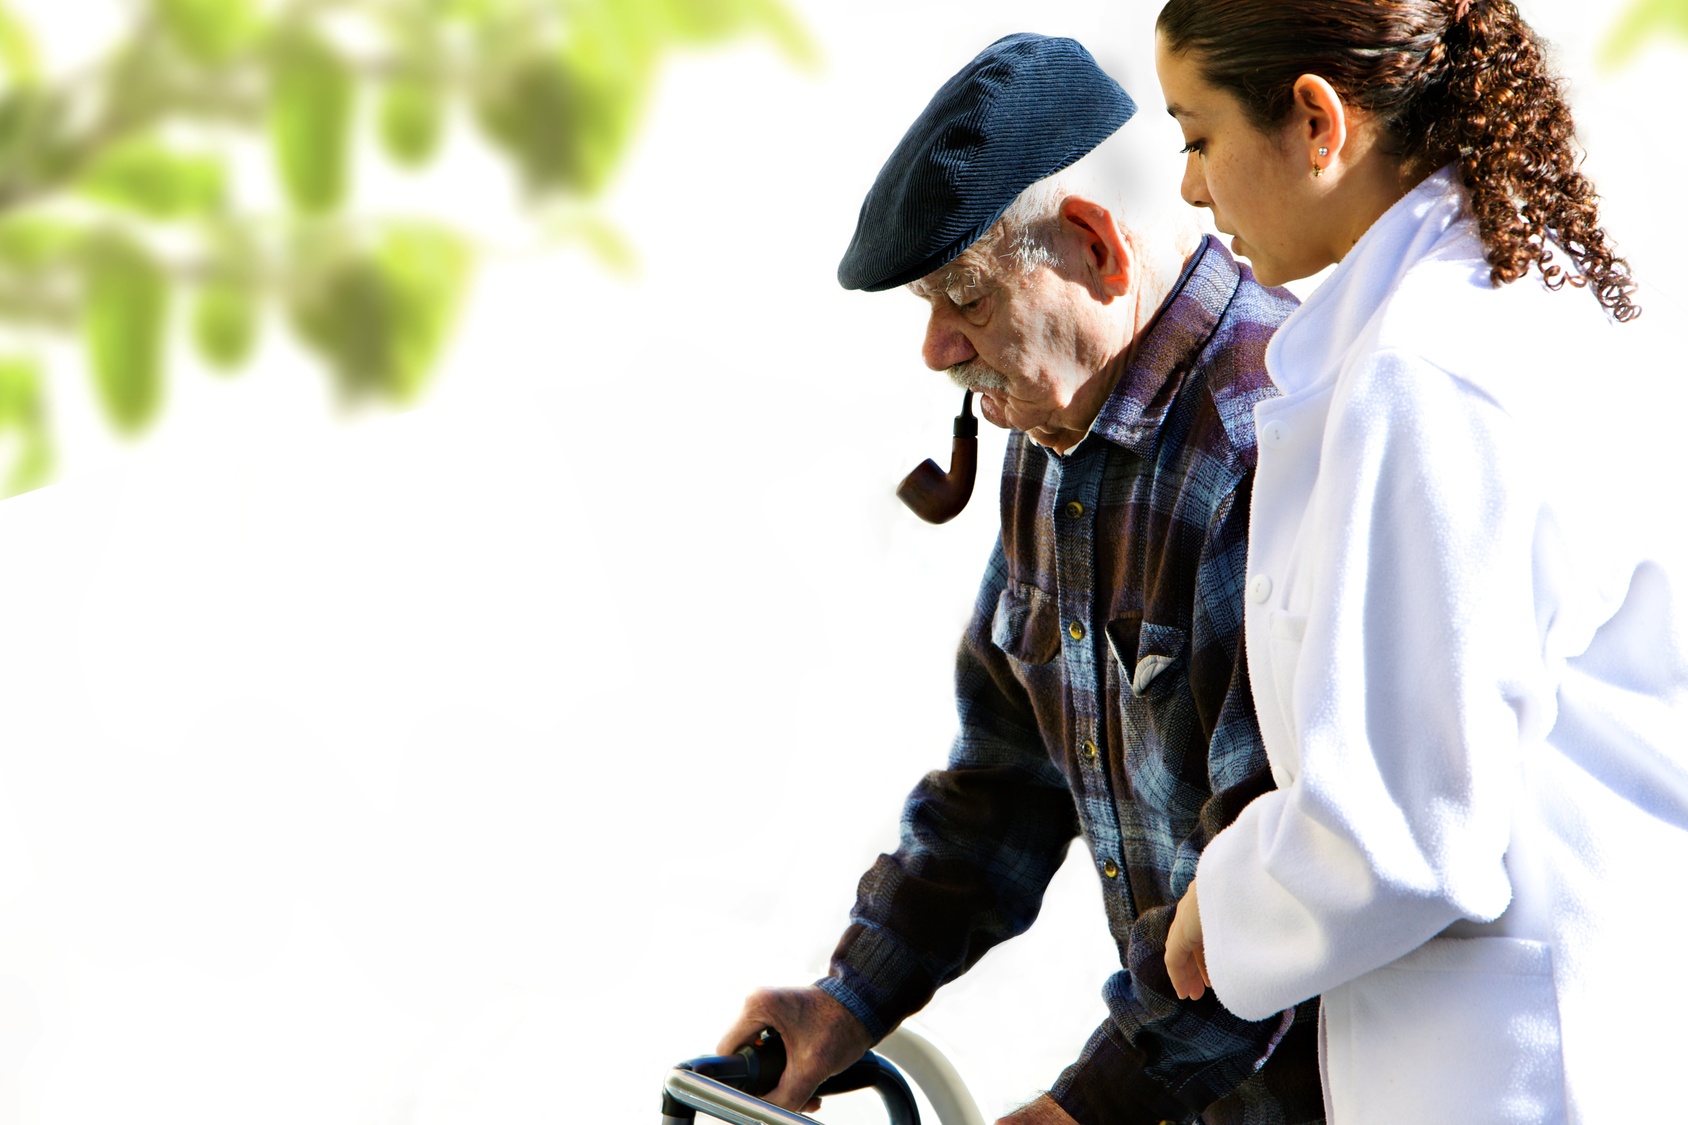 Démarche ralentie chez les personnes âgées : un symptôme précurseur de la démence sénile?